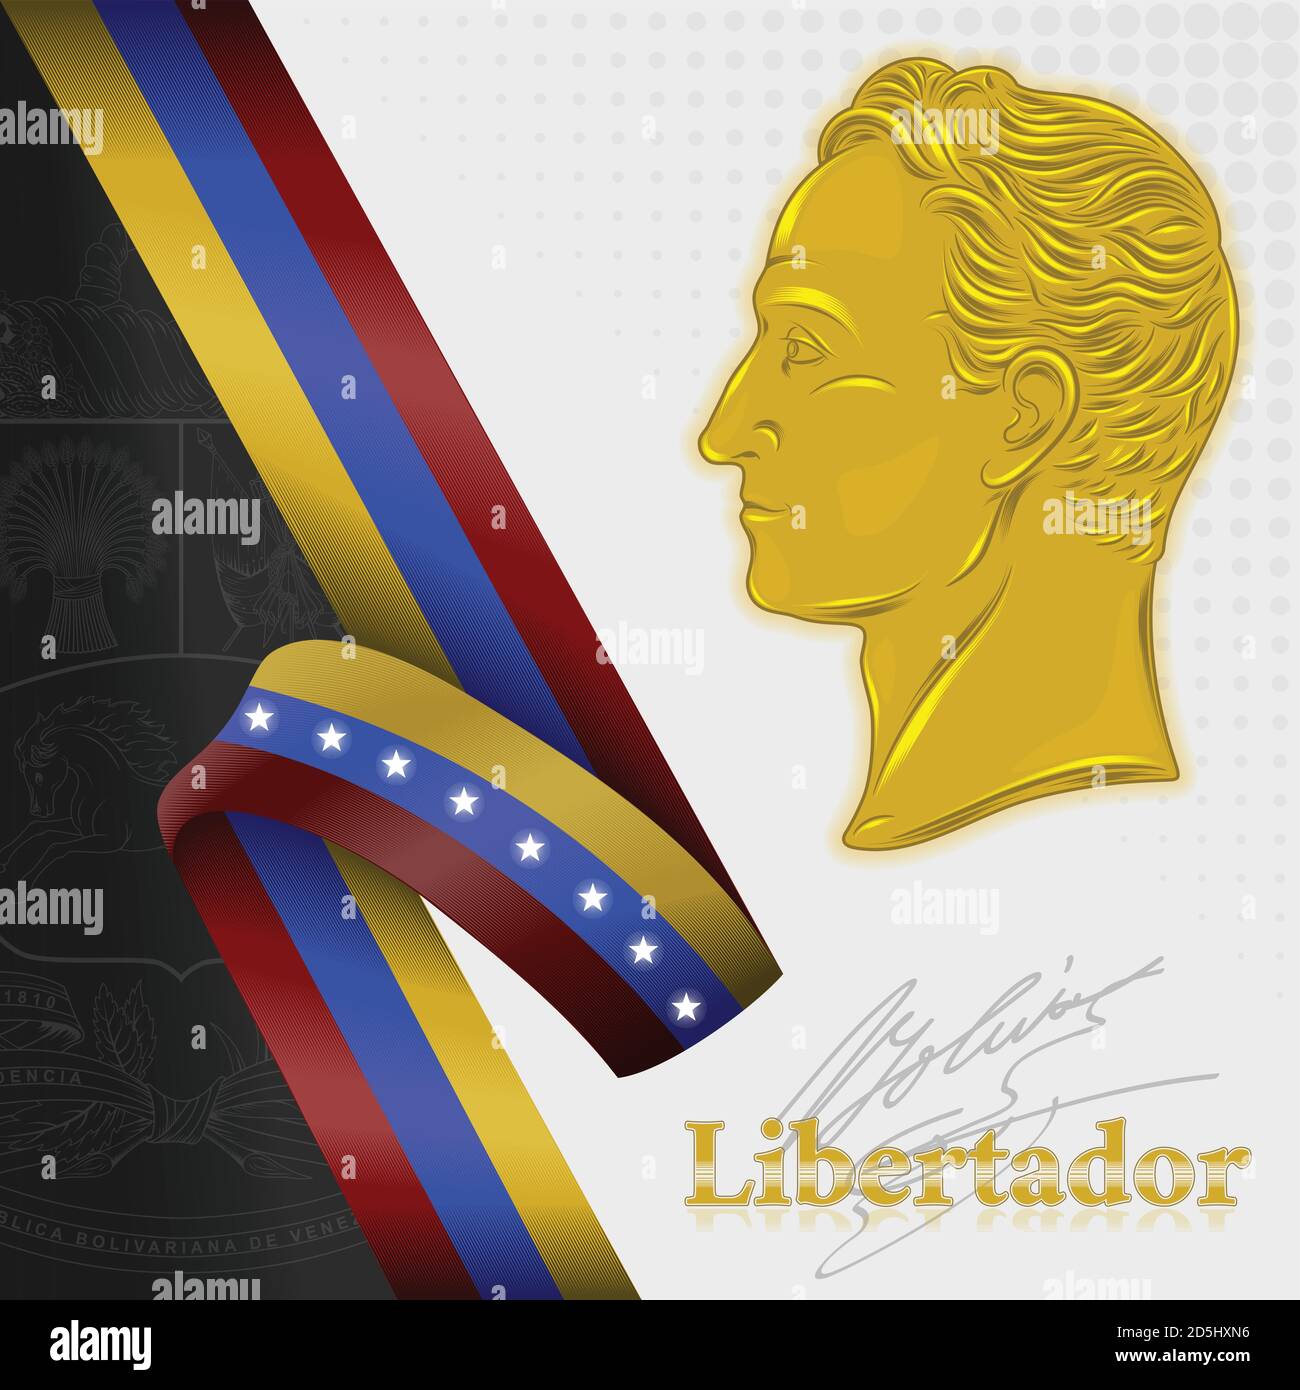 vector design, simon bolivar liberator of venezuela Stock Vector